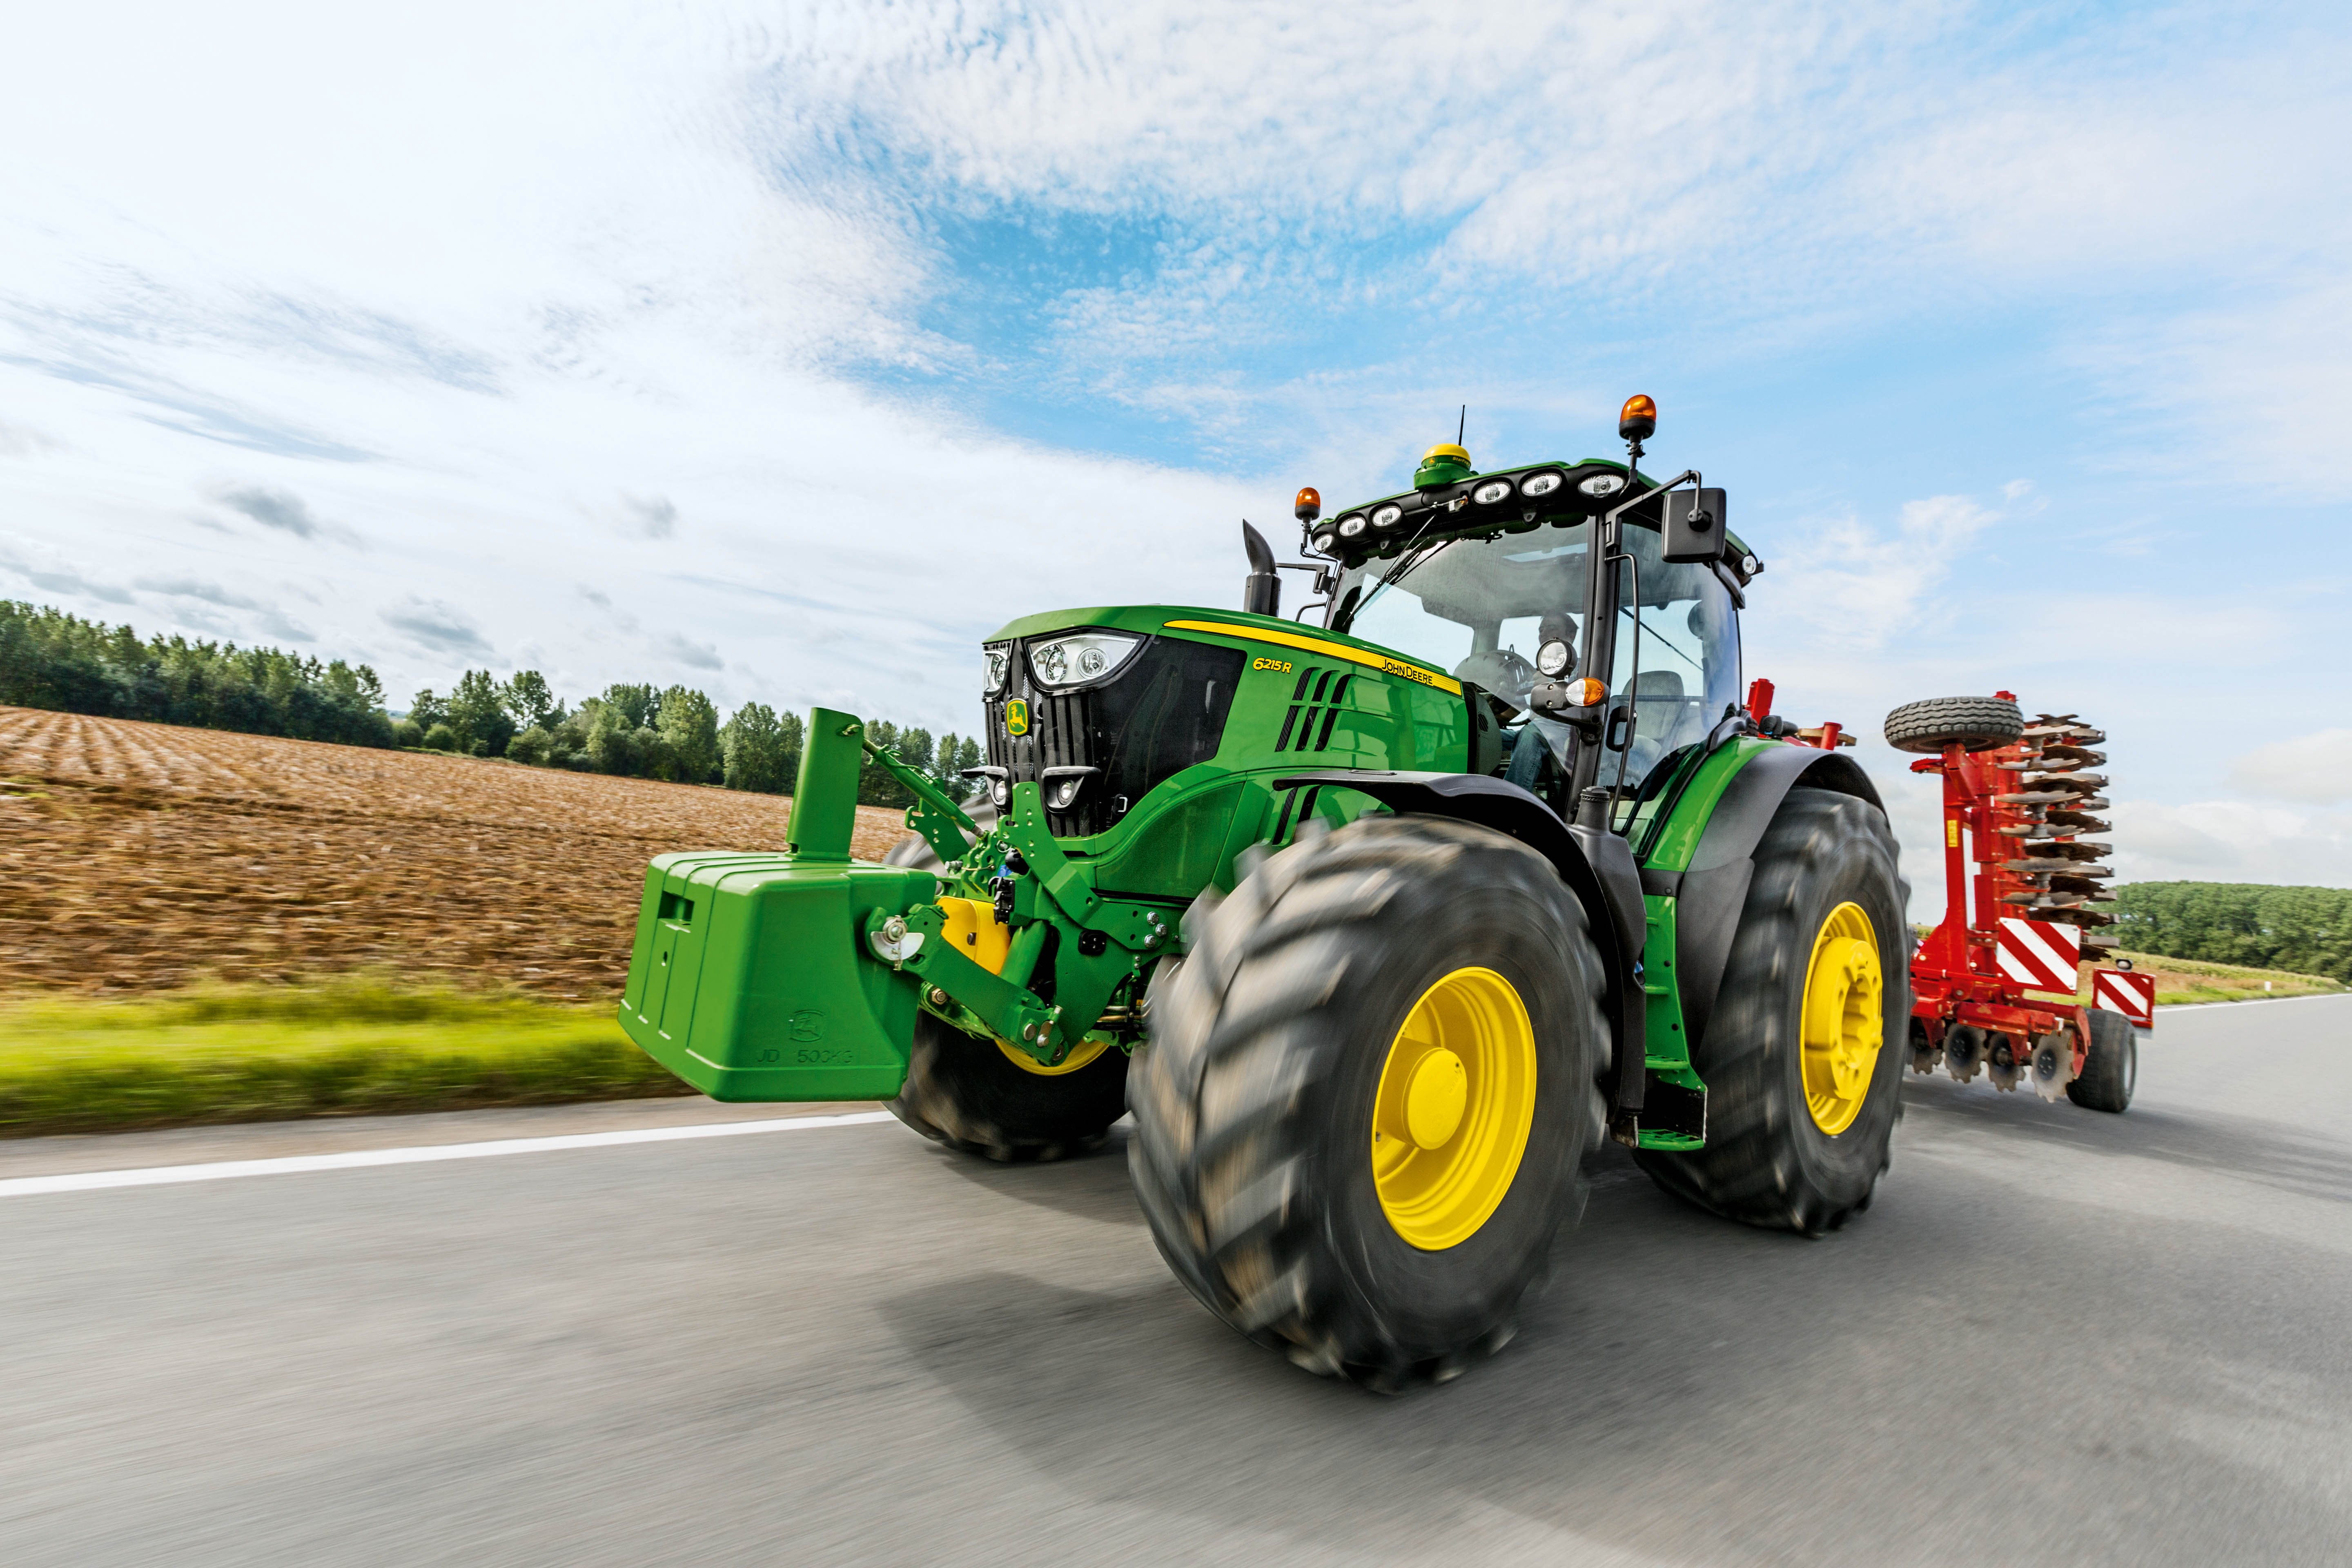 John Deere Tractor Farm Industrial Farming 1jdeere , HD Wallpaper & Backgrounds